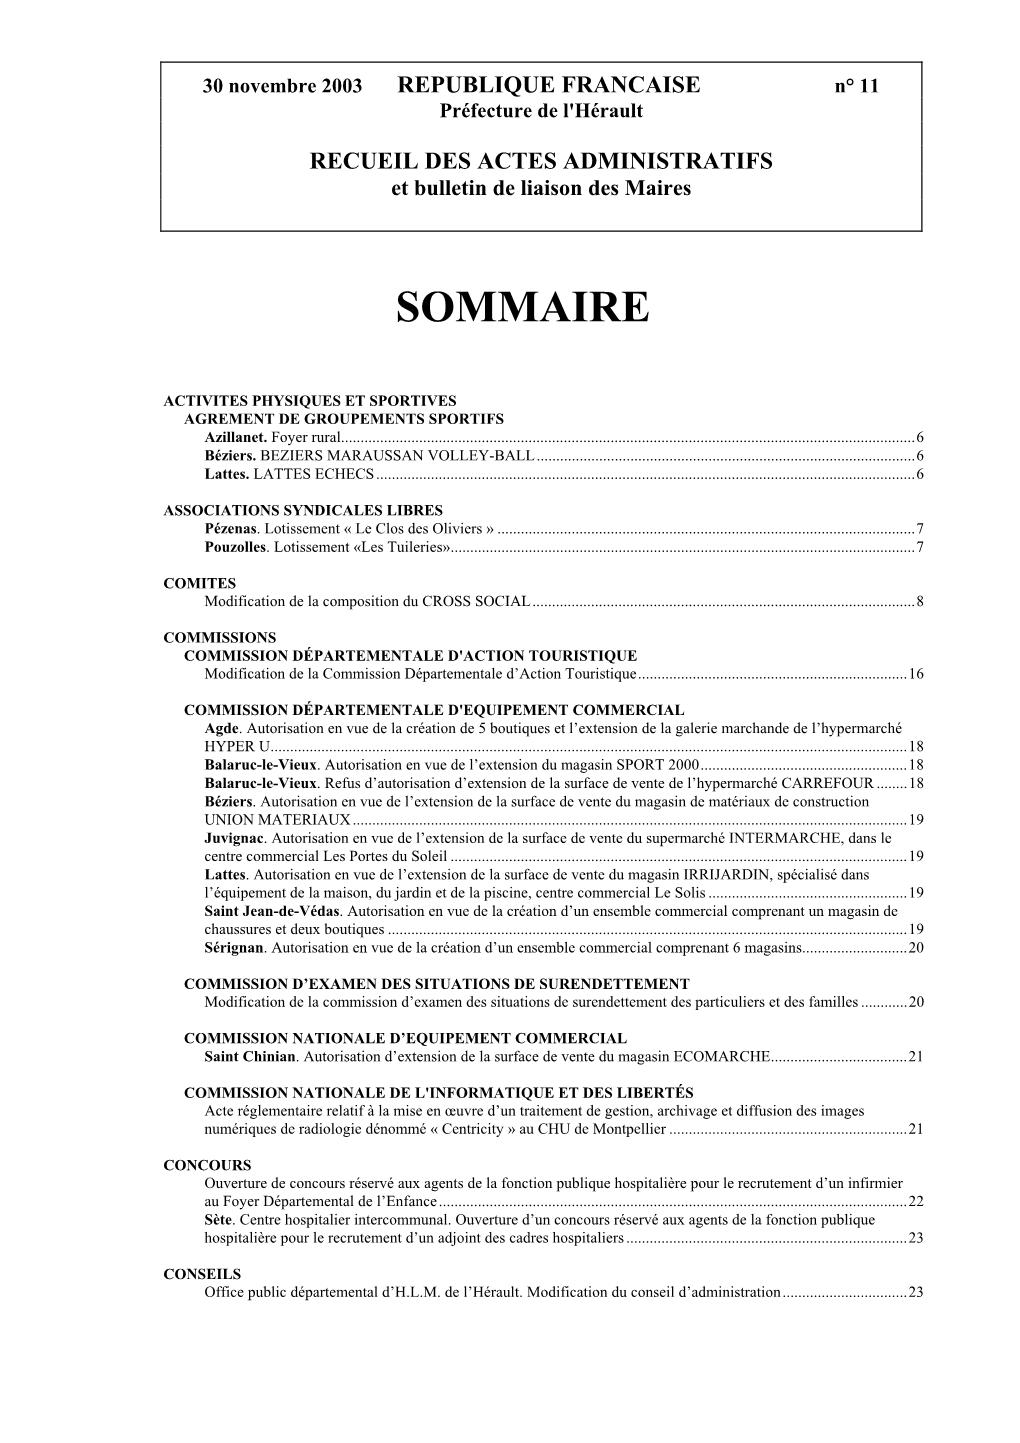 30 Novembre 2003 REPUBLIQUE FRANCAISE N° 11 Préfecture De L'hérault